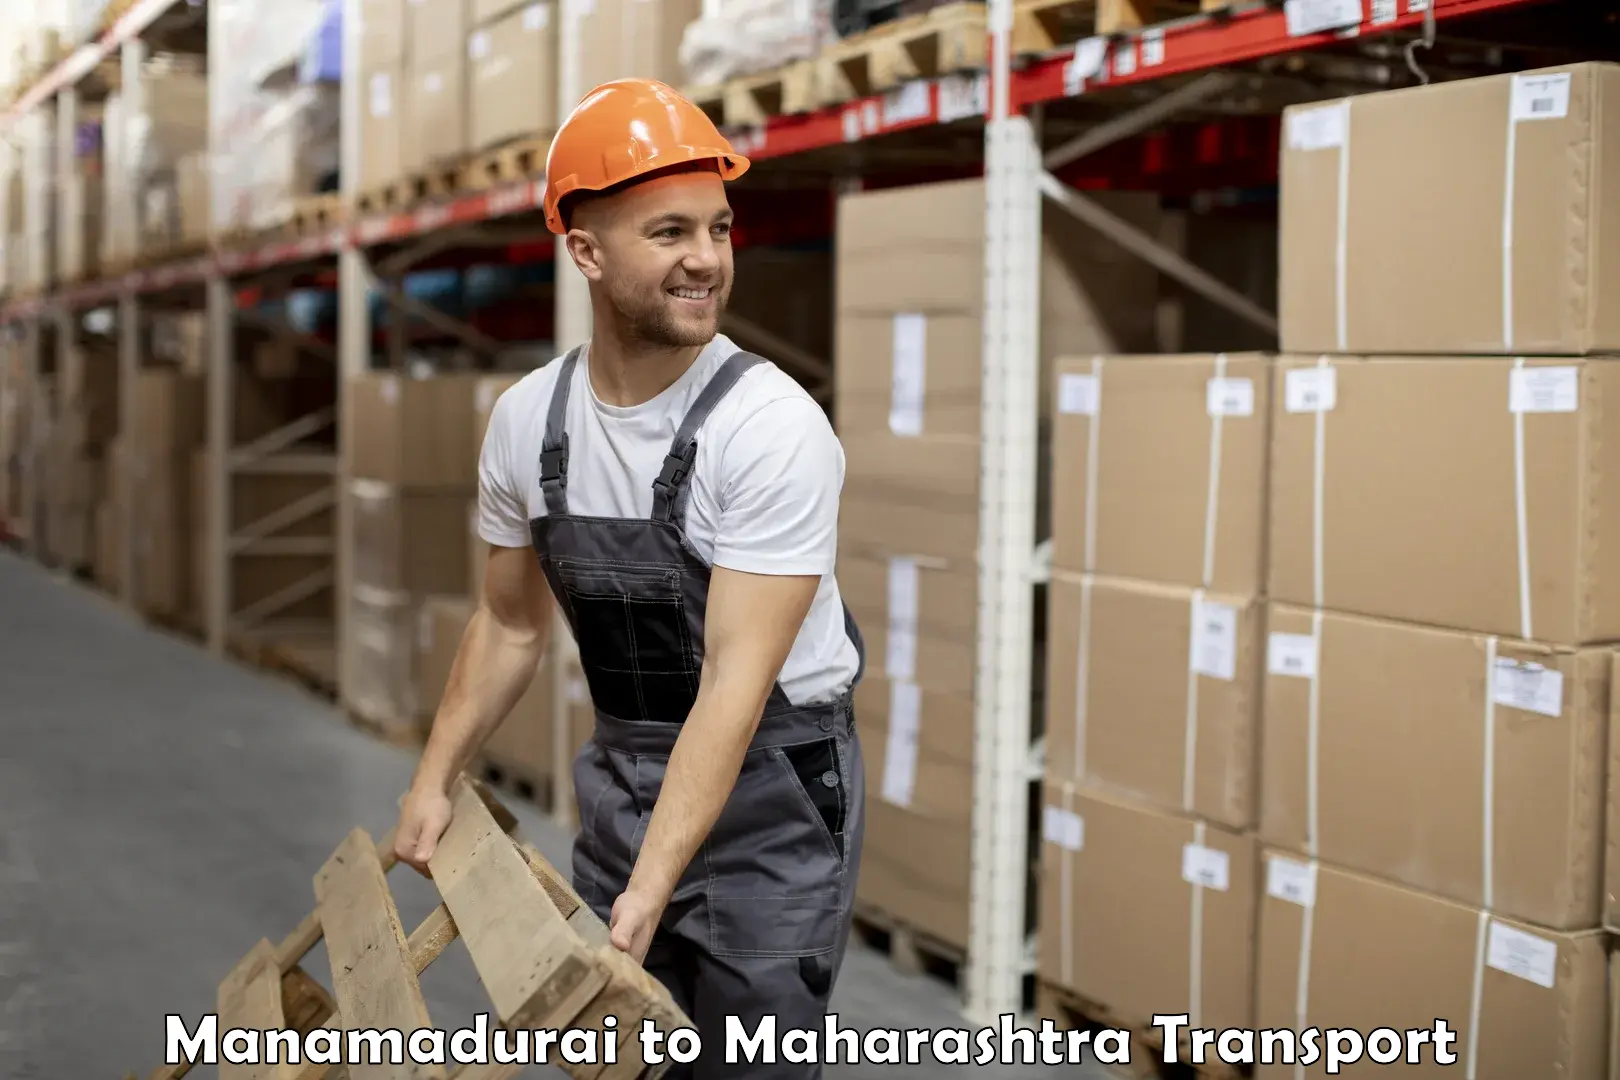 Container transport service Manamadurai to Rahimatpur